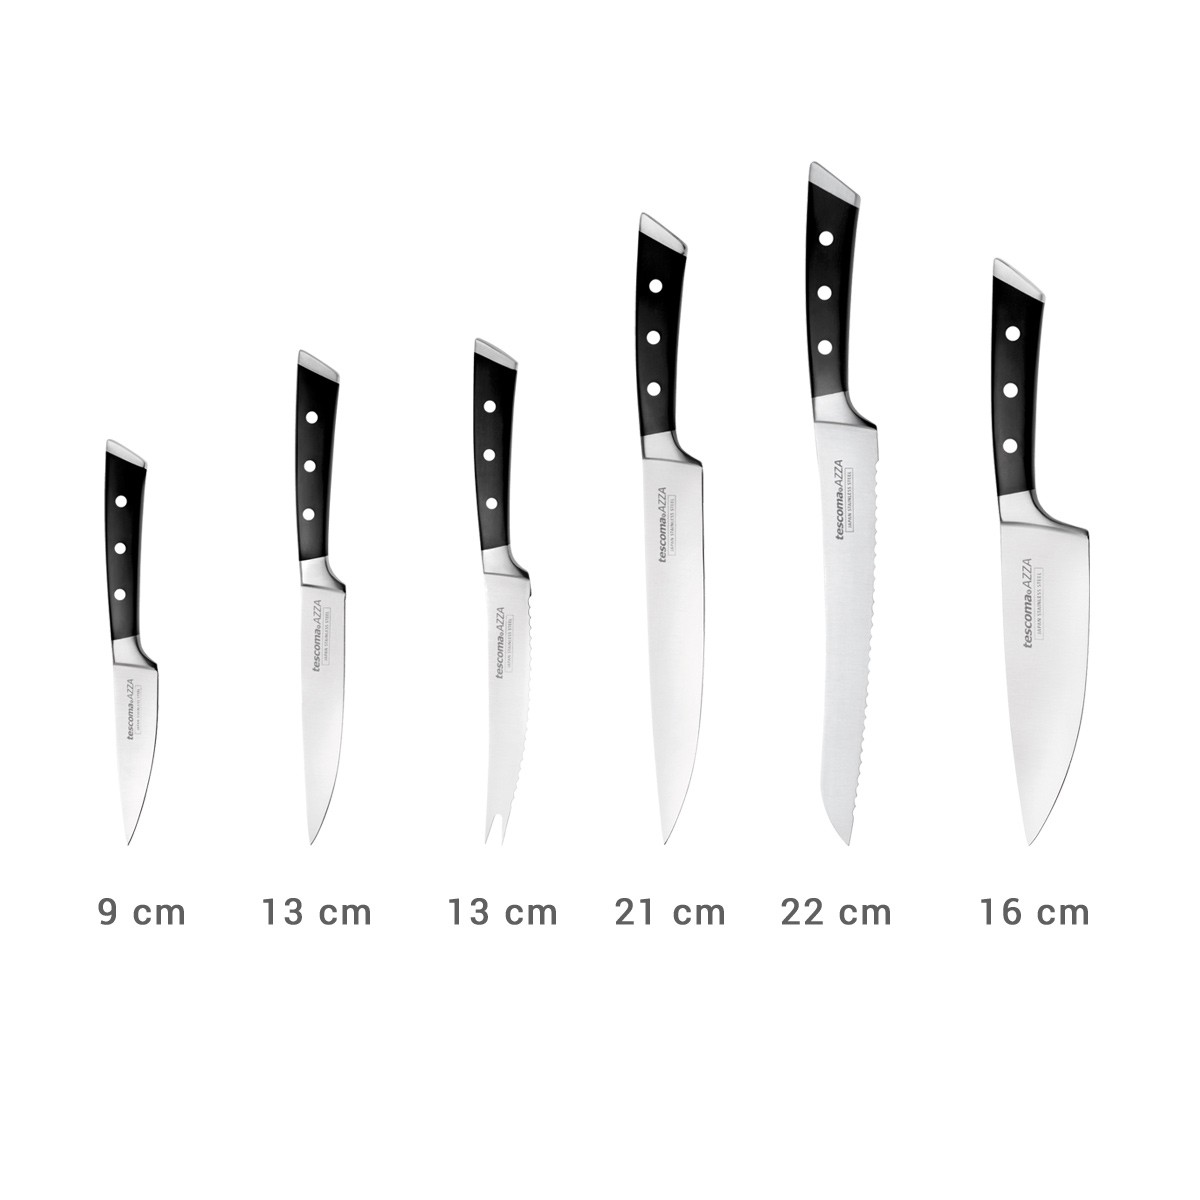 Blok do noży AZZA, Z 6 nożami